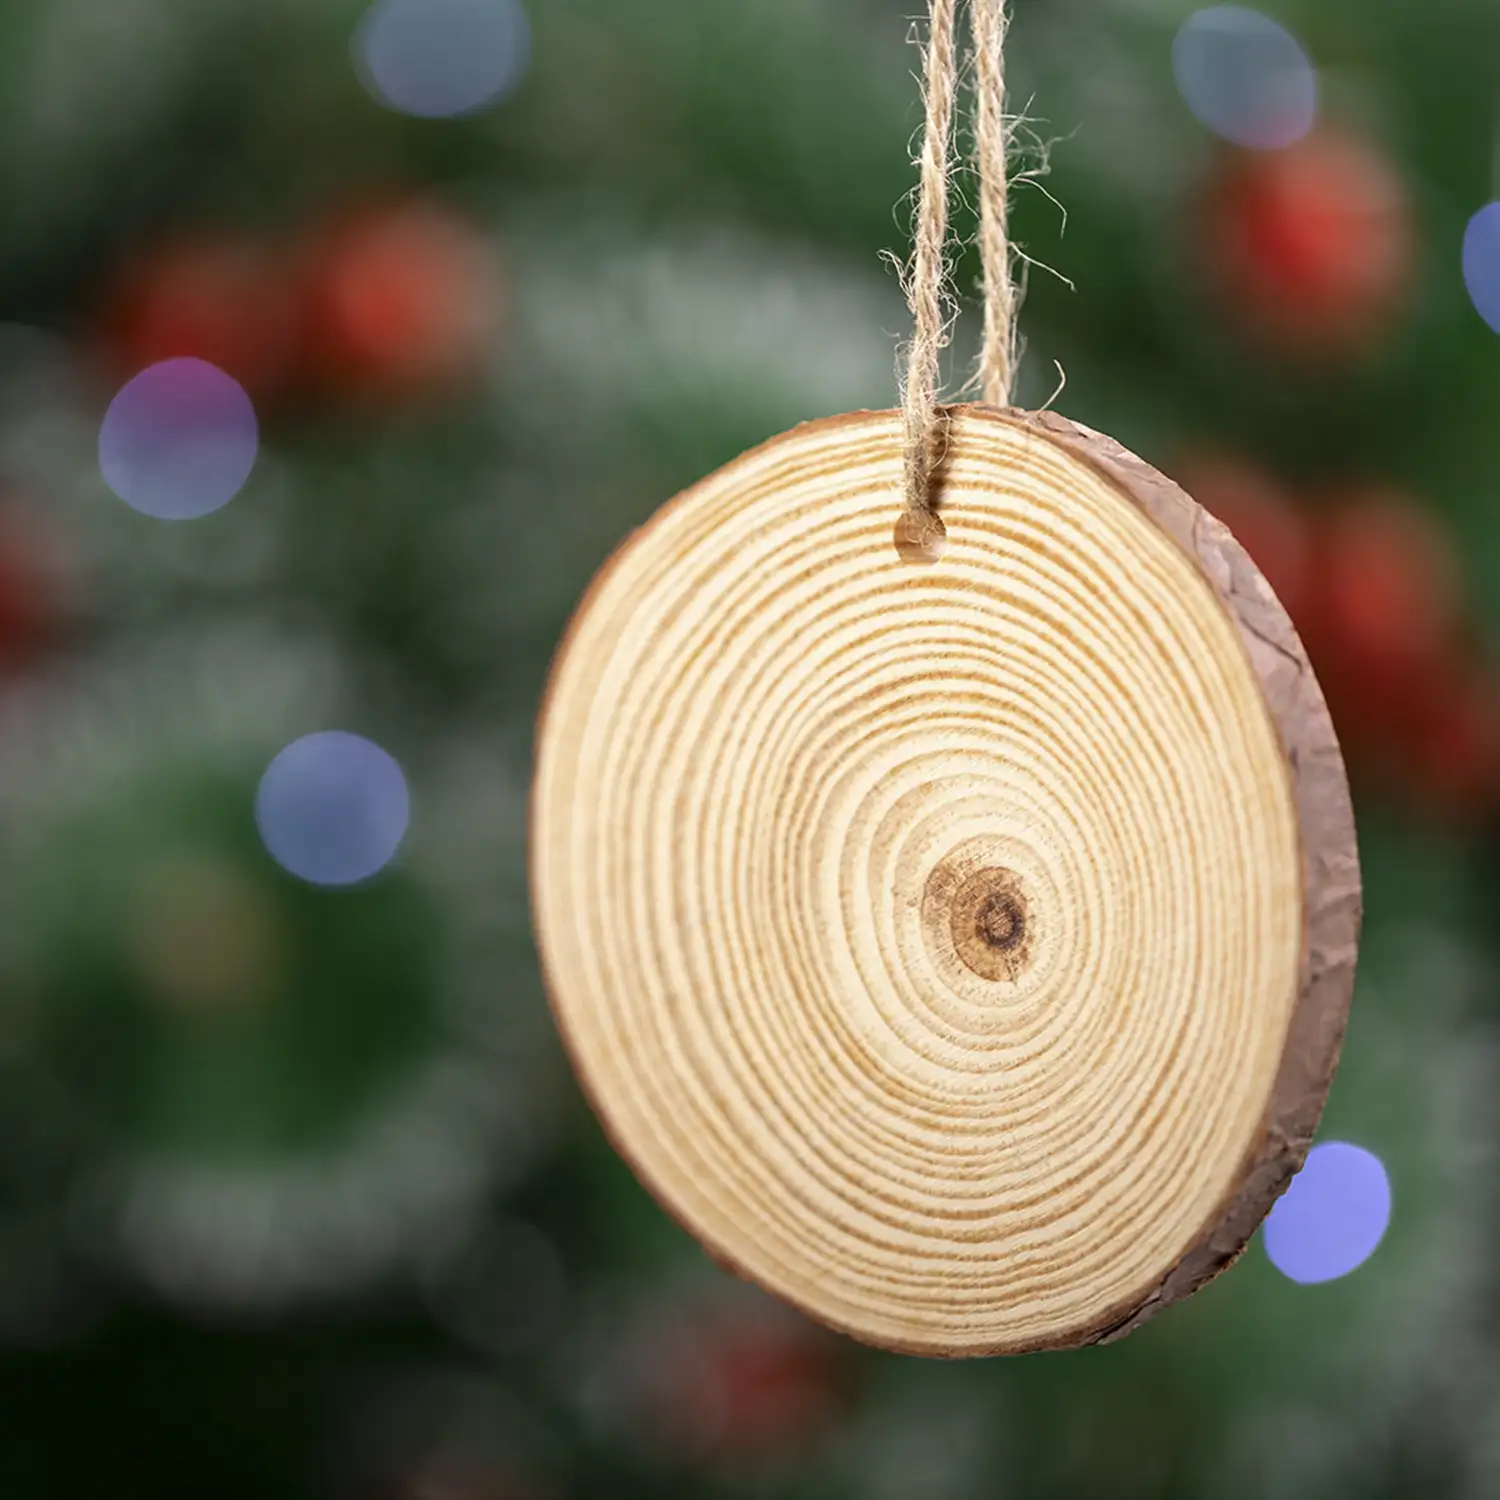 Adorno navideño en madera natural al corte, con lacito para colgar y bola a juego.